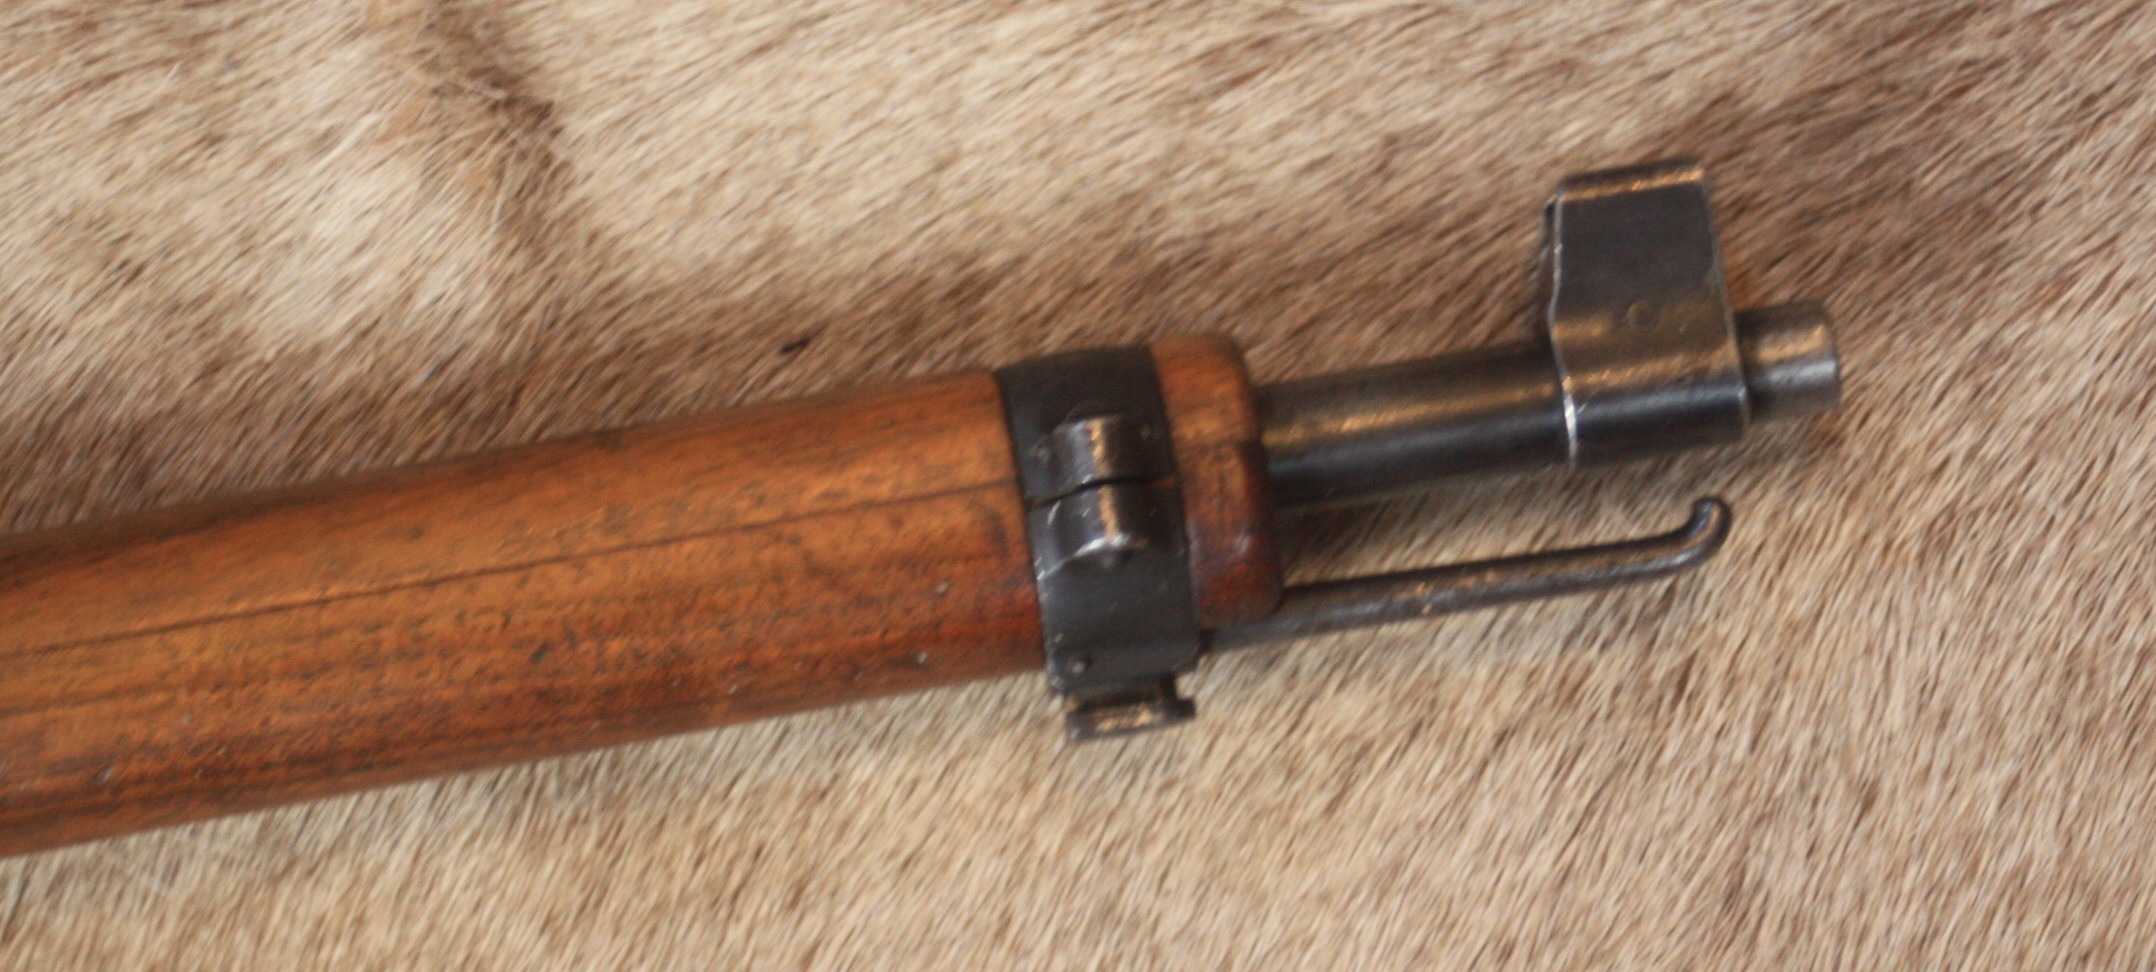 Swiss K31, Straight pull Rifle, 7.5x55mm